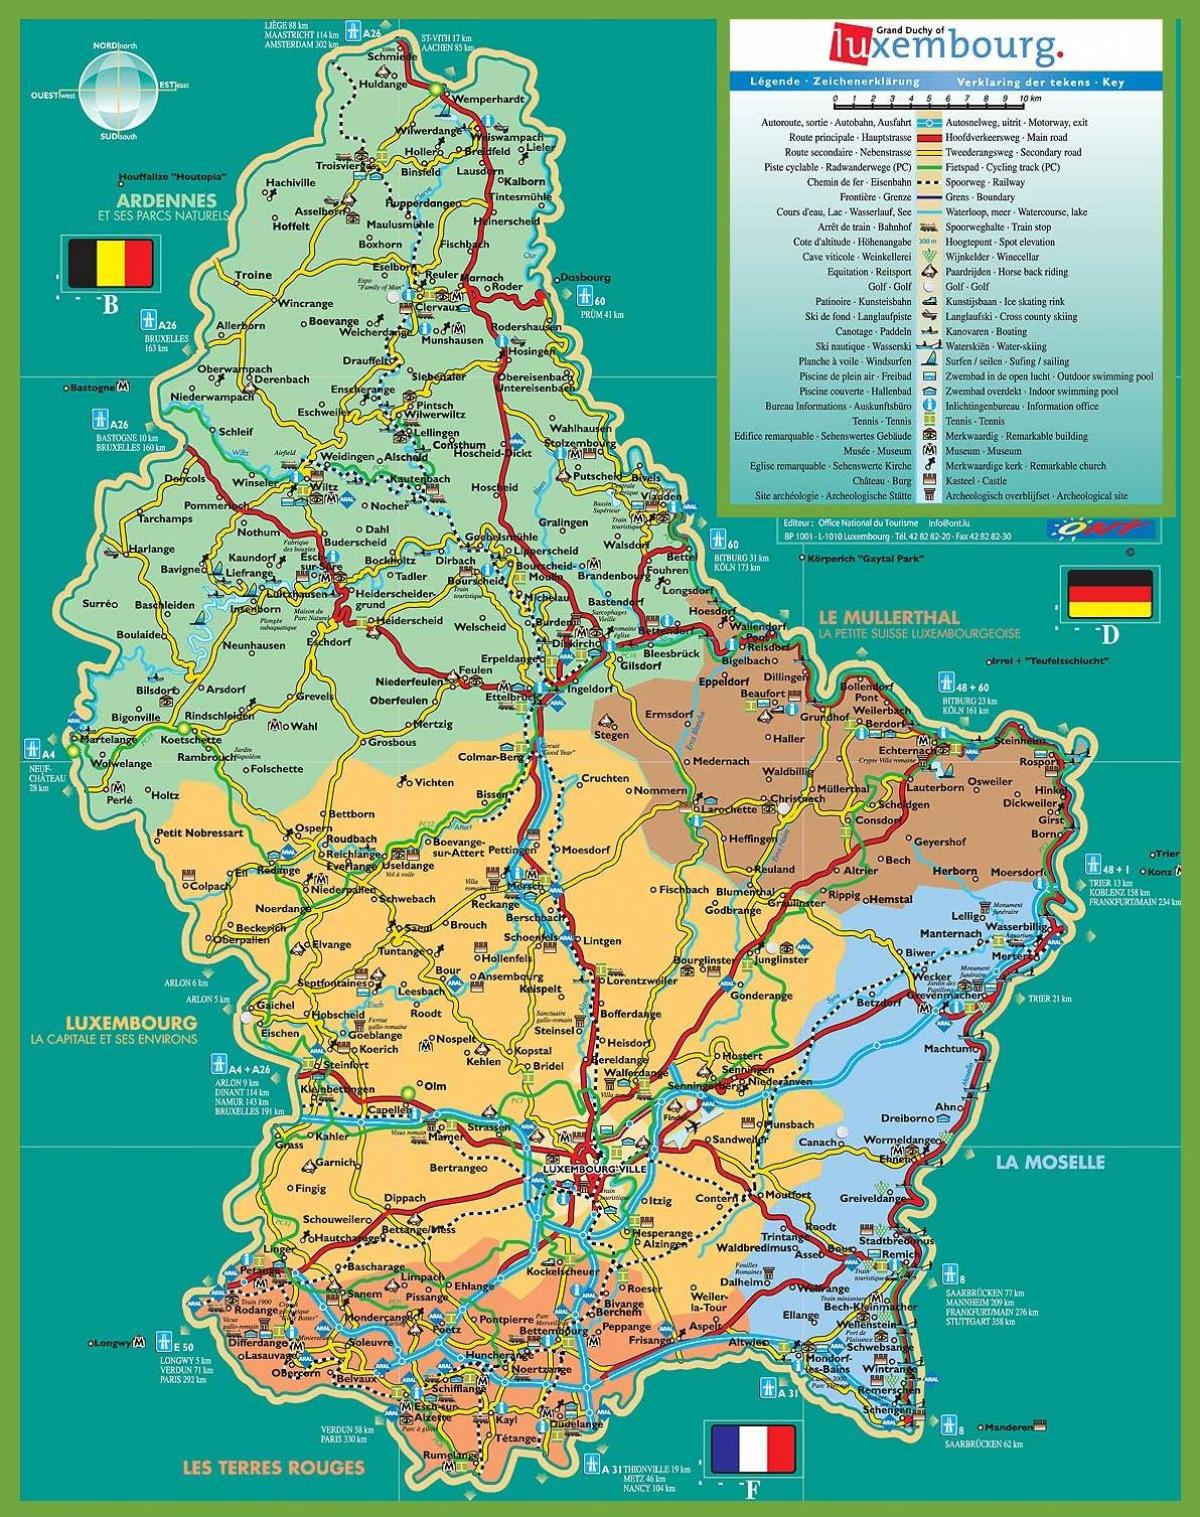 Mapa turístico da cidade do luxemburgo